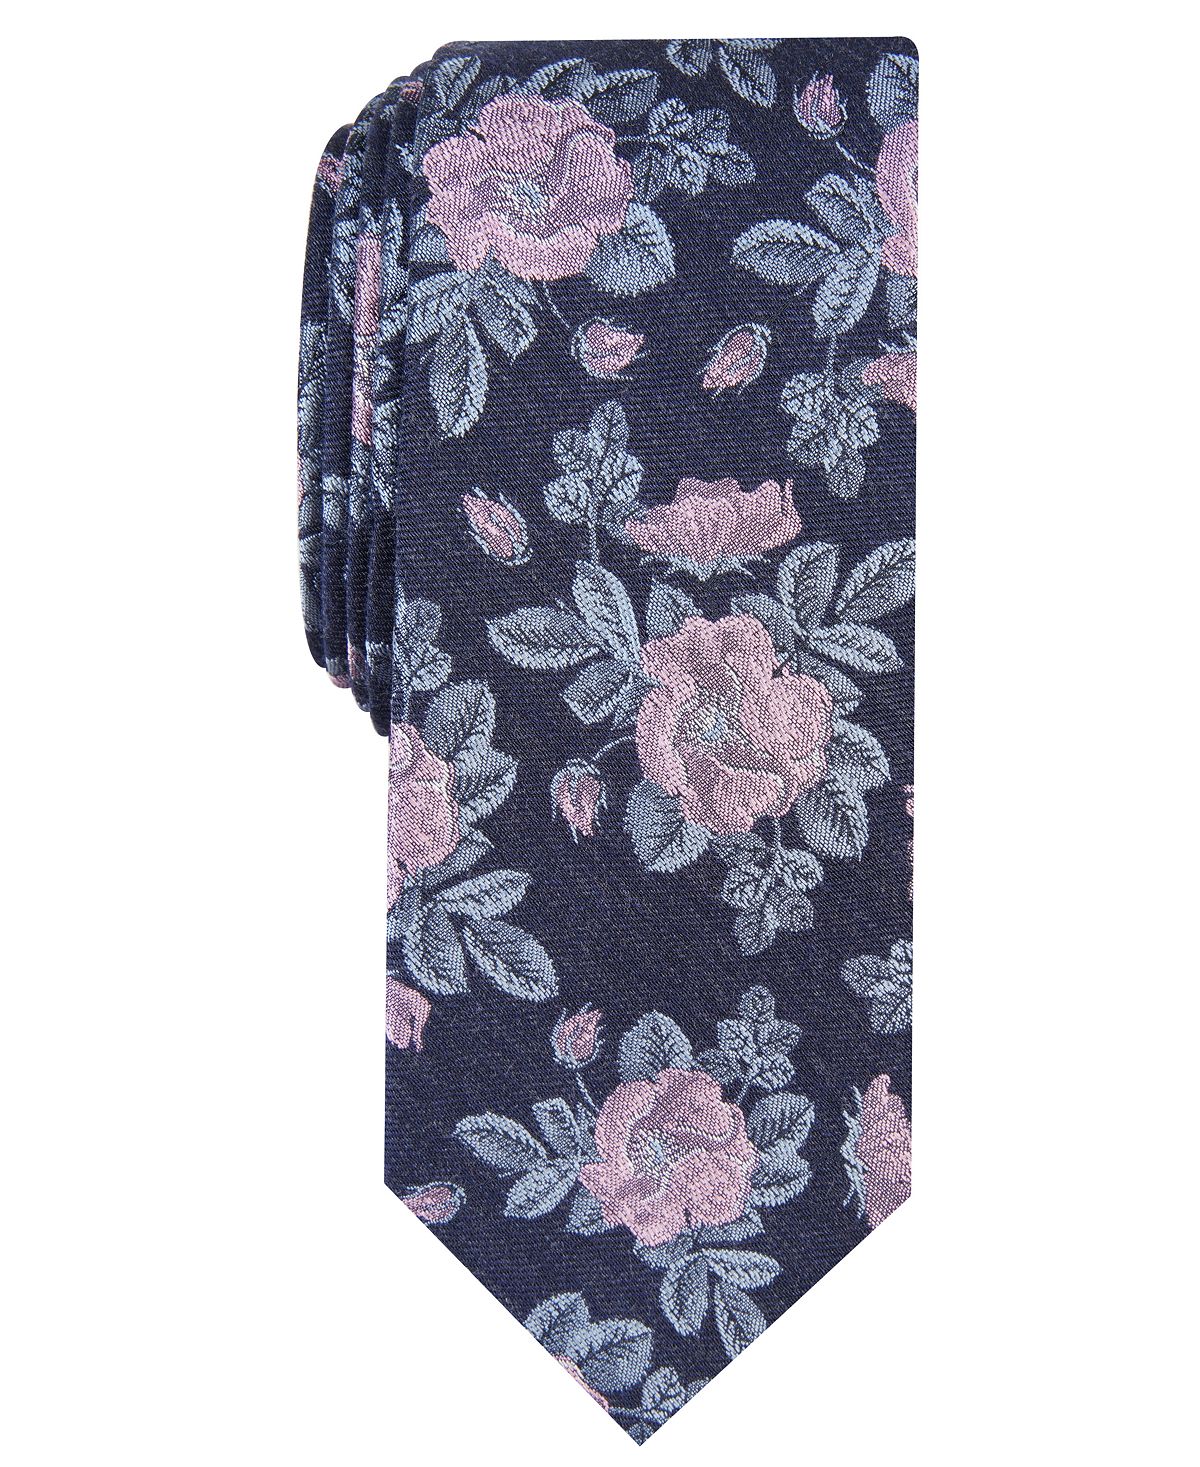 Мужской узкий галстук с цветочным принтом Fairmont Bar III fairmont dubai